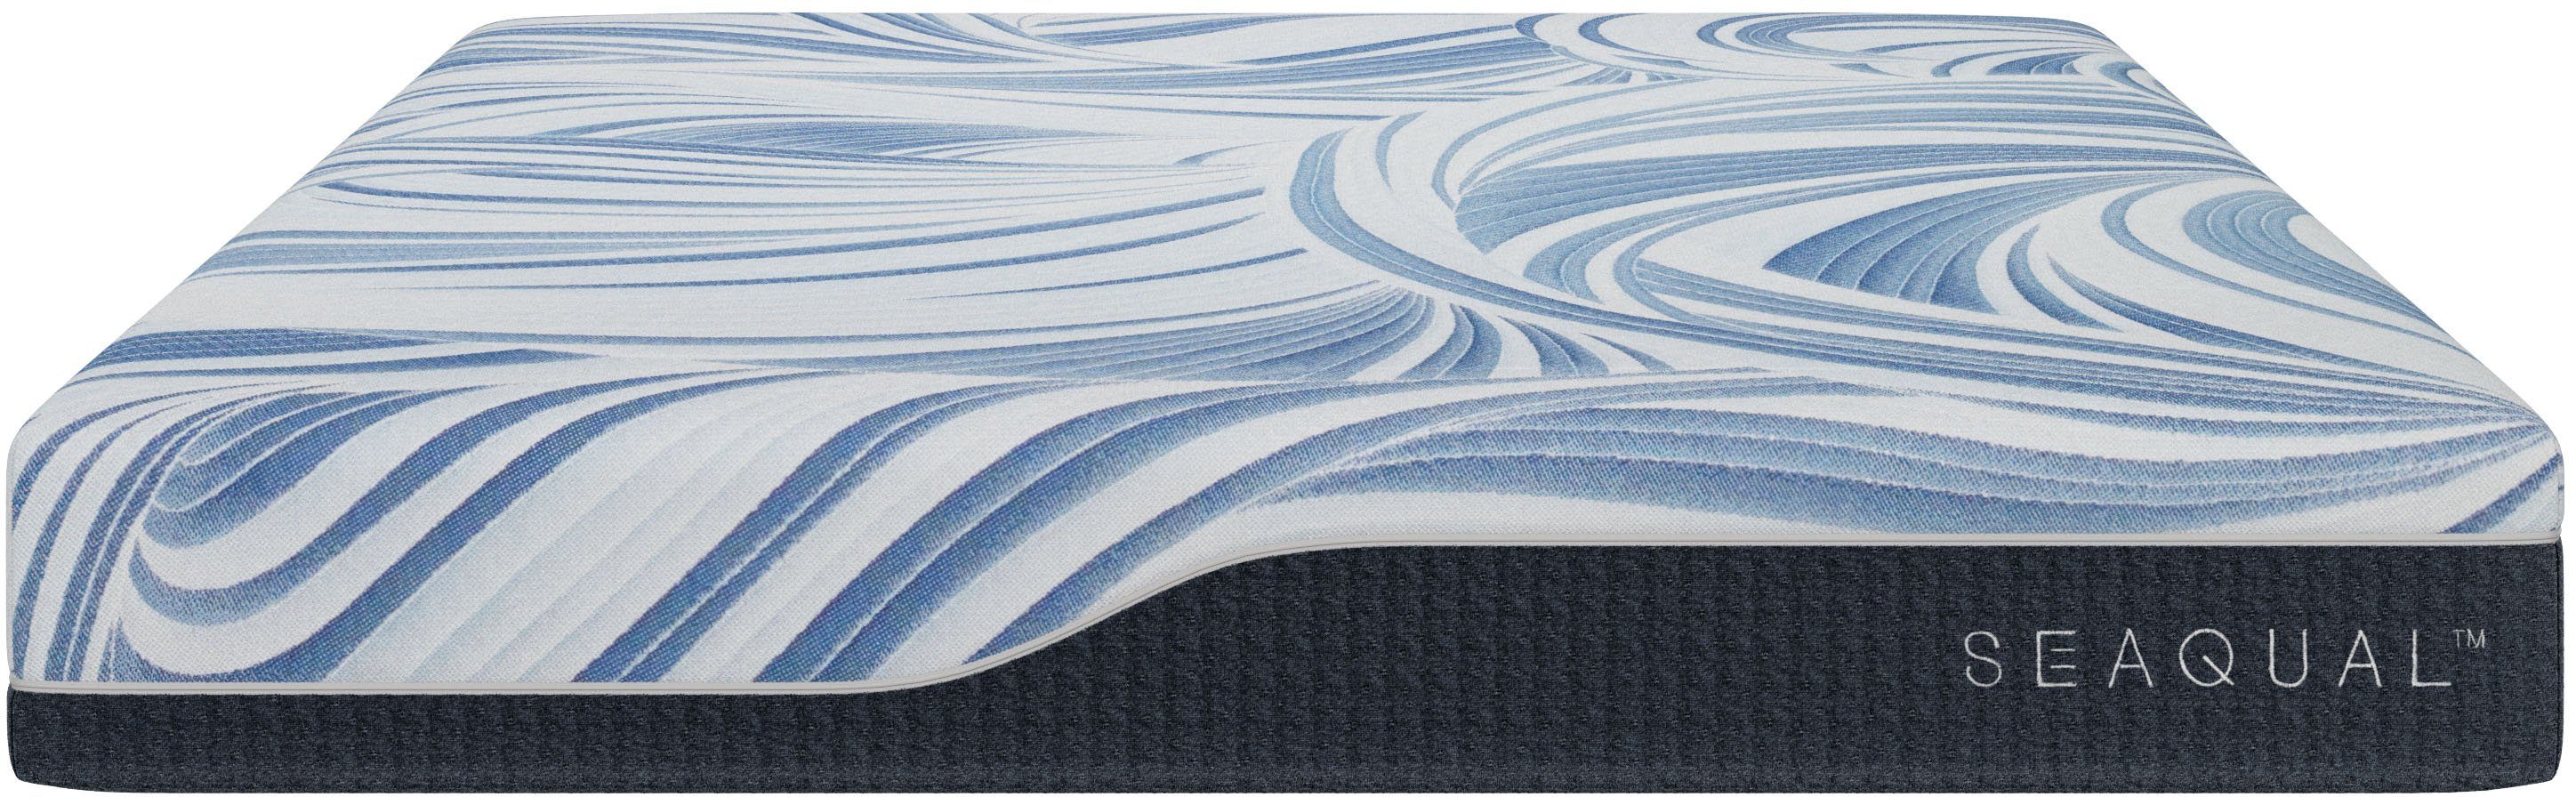 Taschenfederkernmatratze »Drömmare«, Älgdröm, 22 cm hoch, 500 Federn, Original Seaqual Bezug mit 58% recyceltem Polyester, davon 26% SEAQUAL TM Polyester. DO GOOD SLEEP WELL-Otto